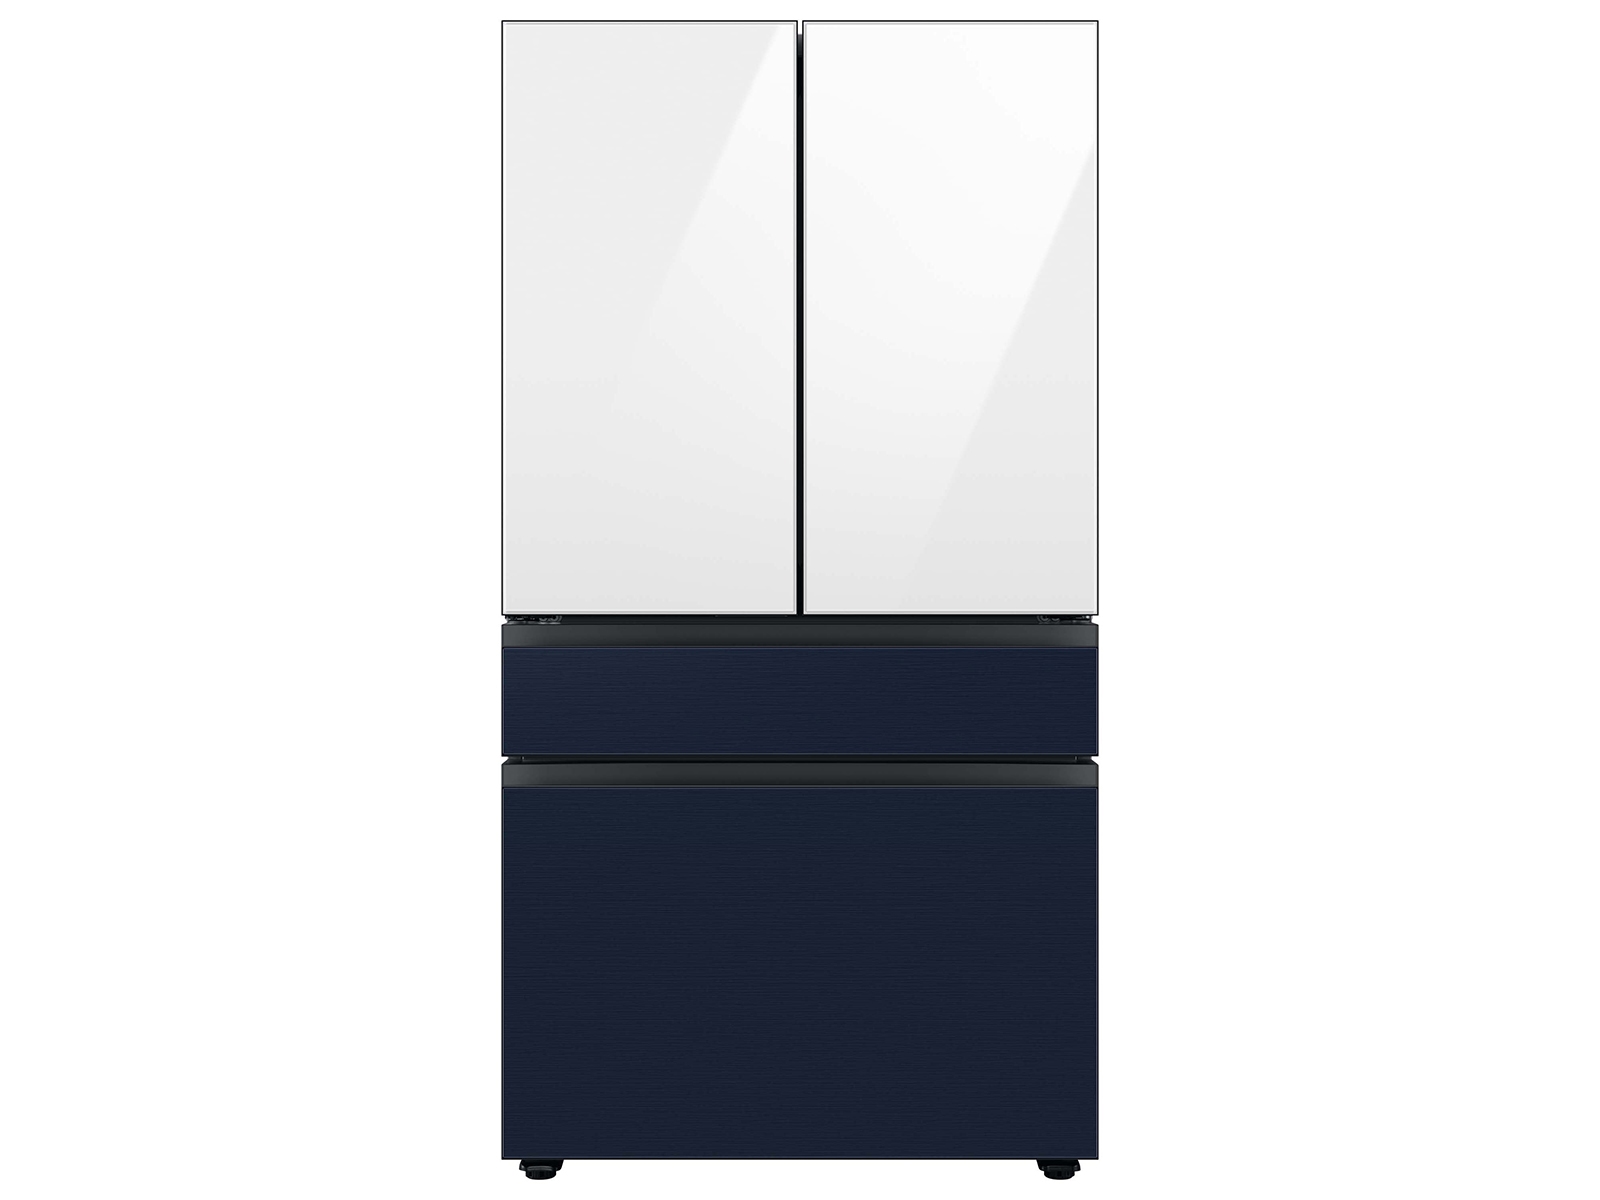 Samsung Bespoke 23 Cu ft 4 Door French Door Refrigerator - Counter Depth Panel Ready